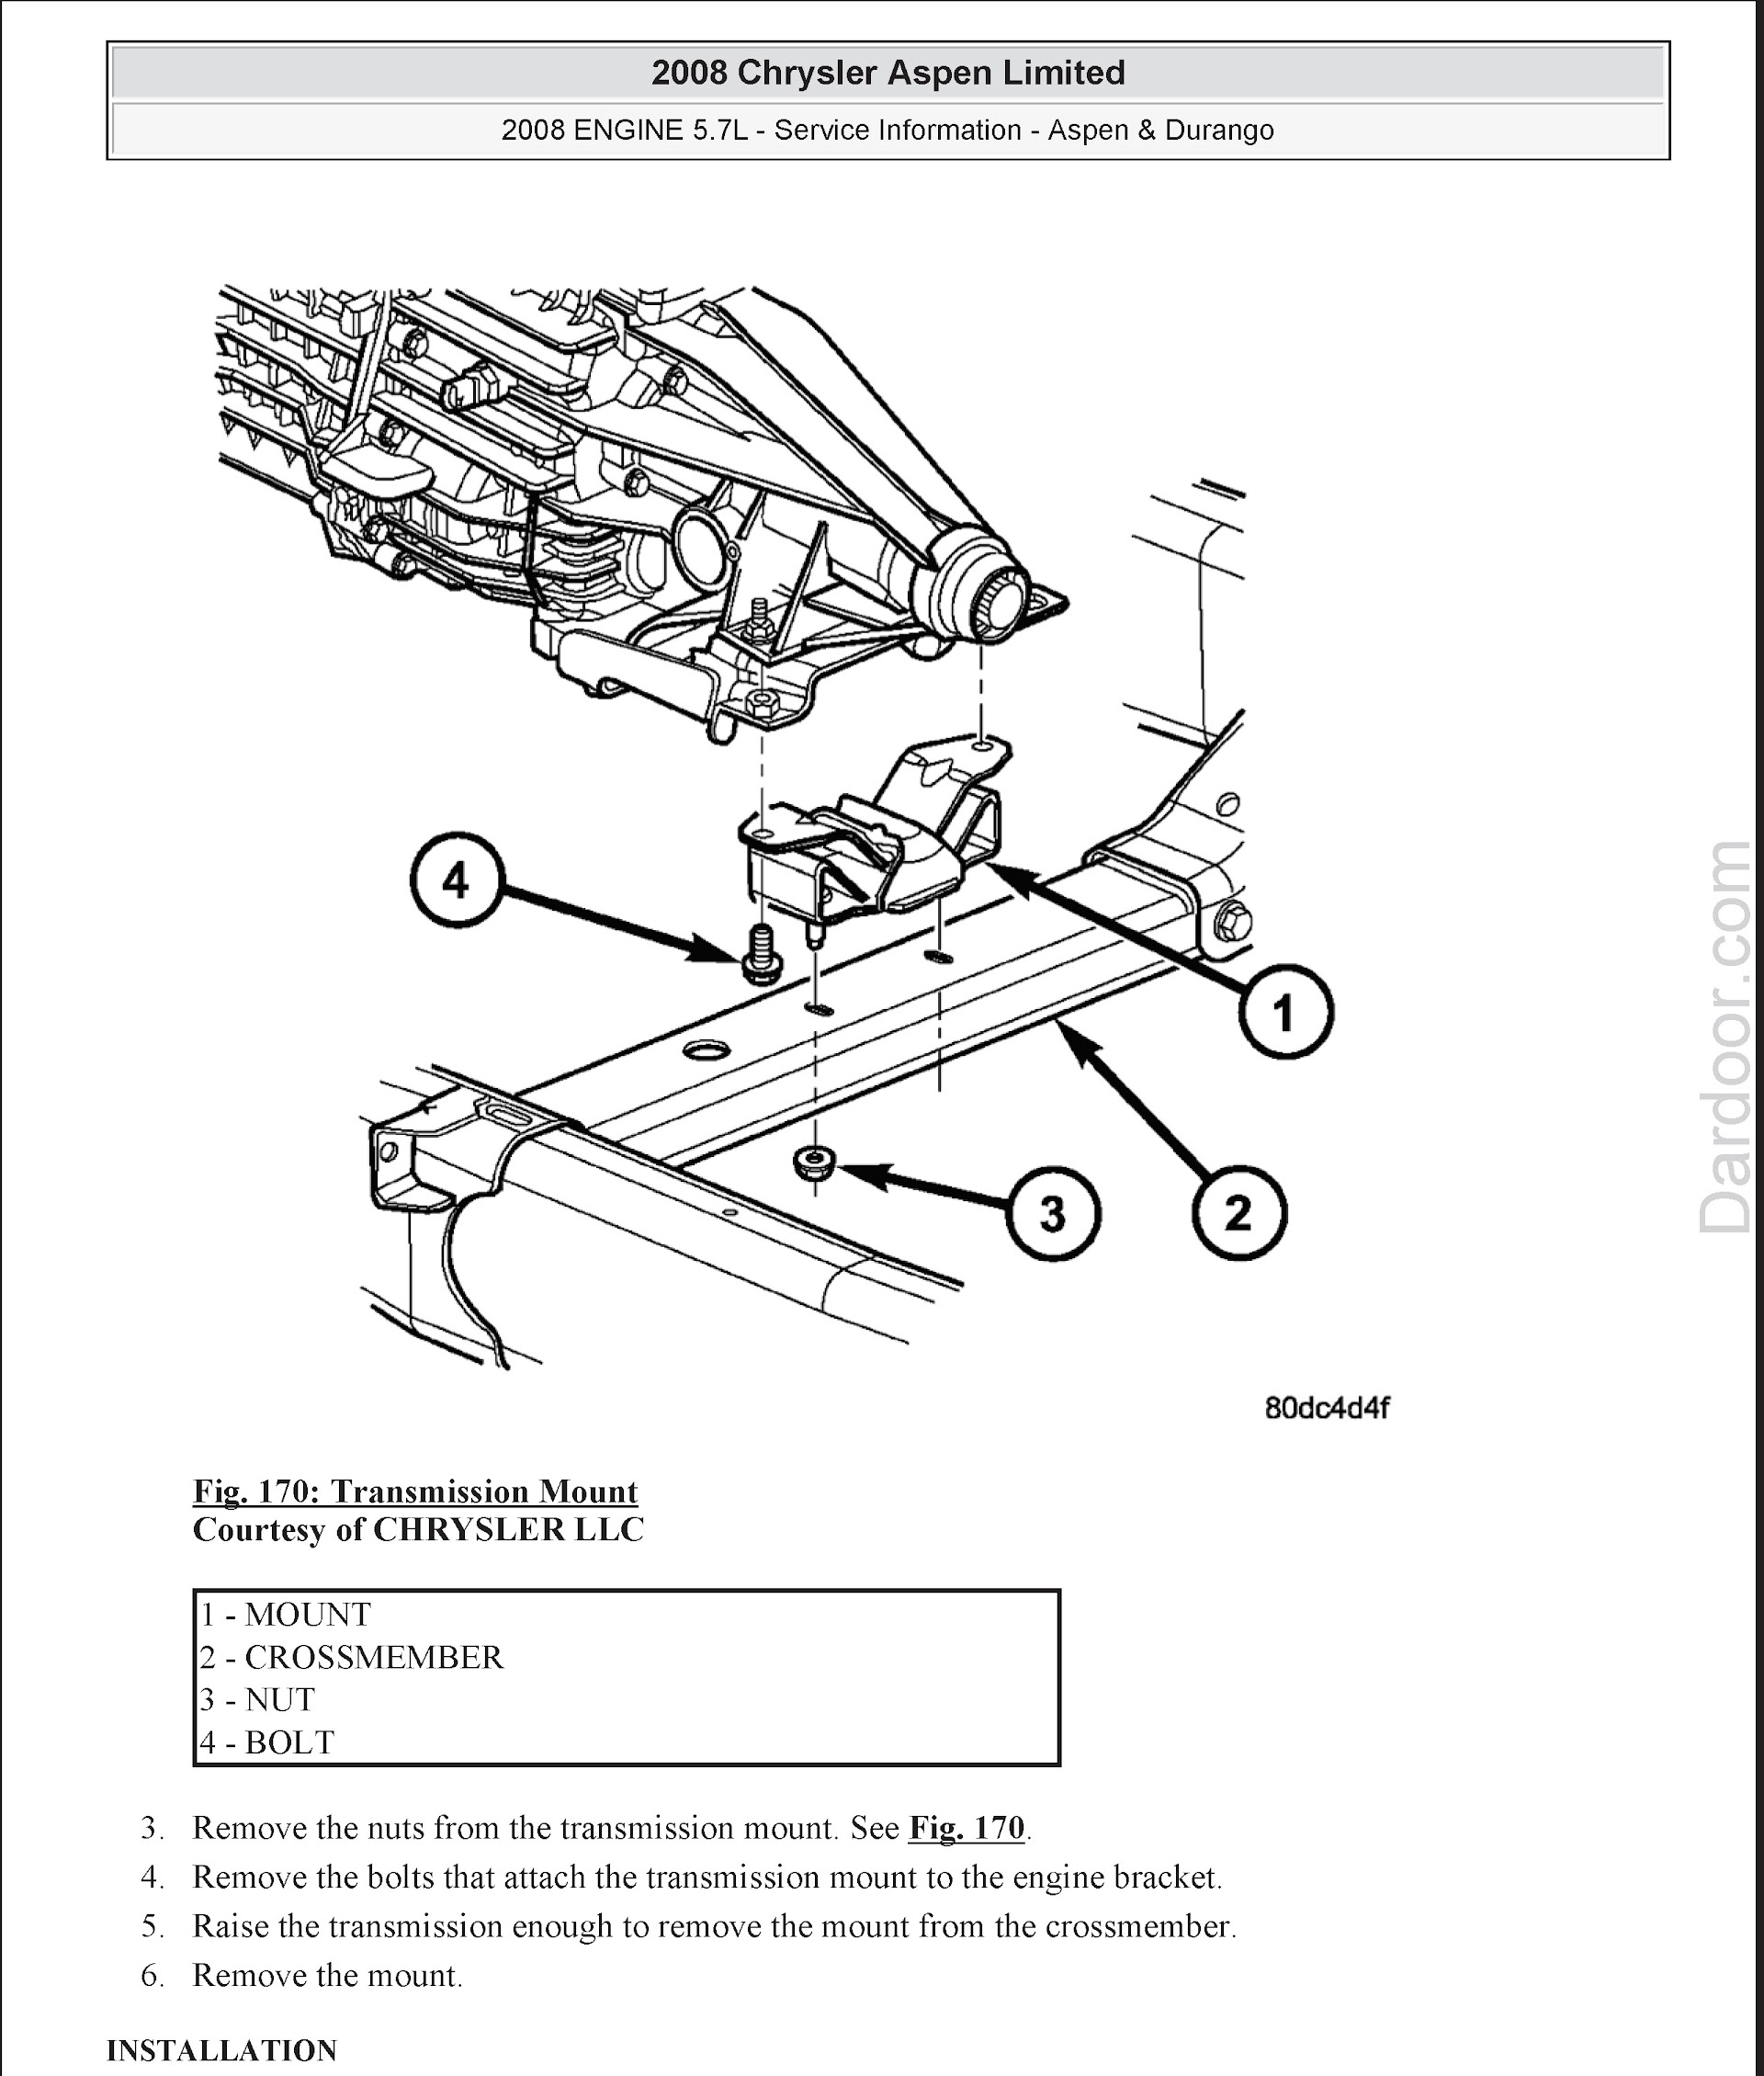 2008 Dodge Durango and Chrysler Aspen Repair Manual